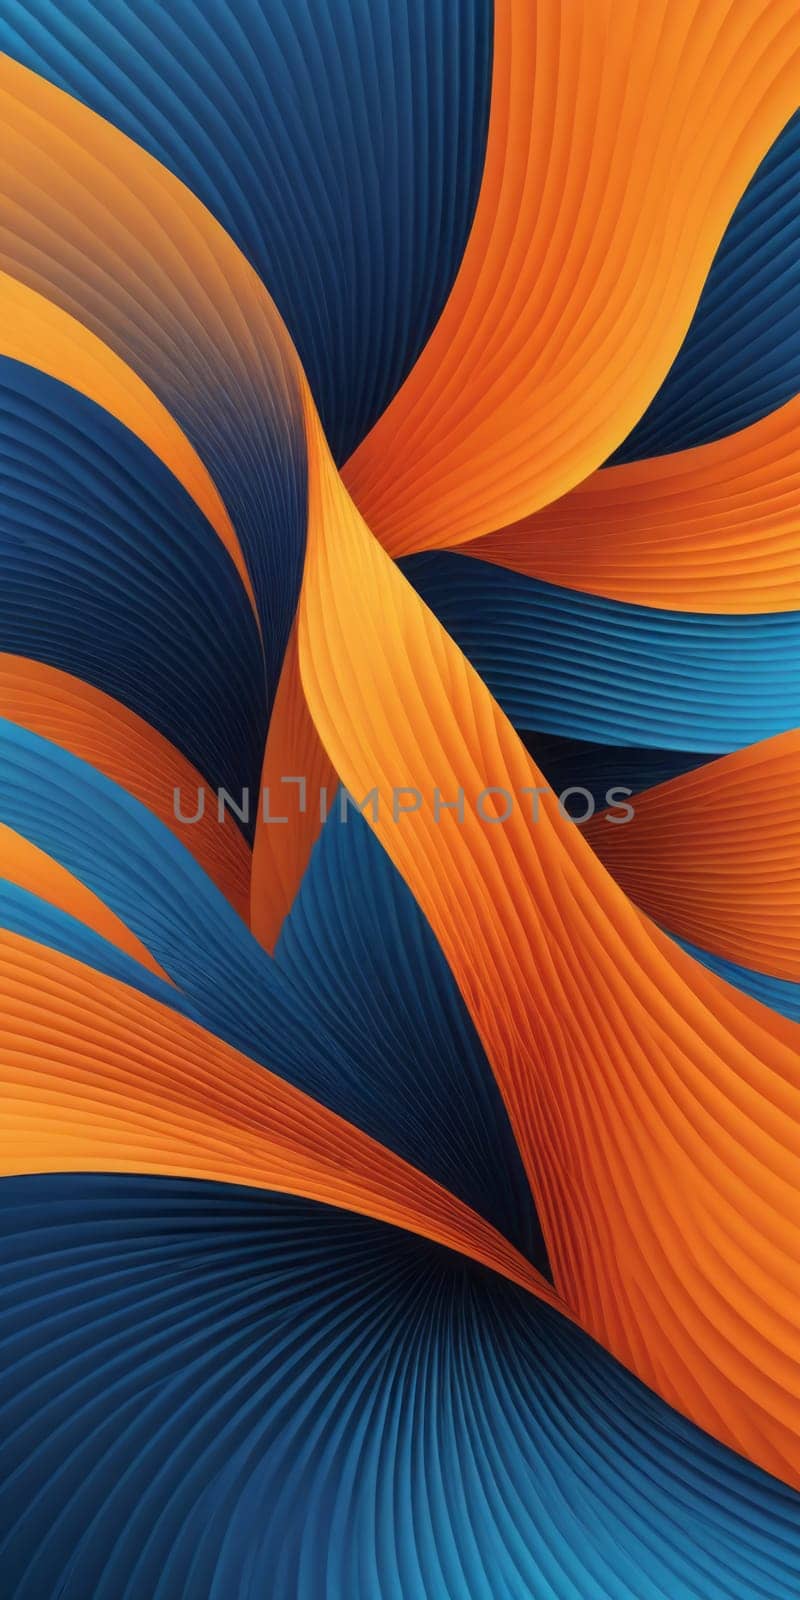 Fanned Shapes in Blue Orange by nkotlyar